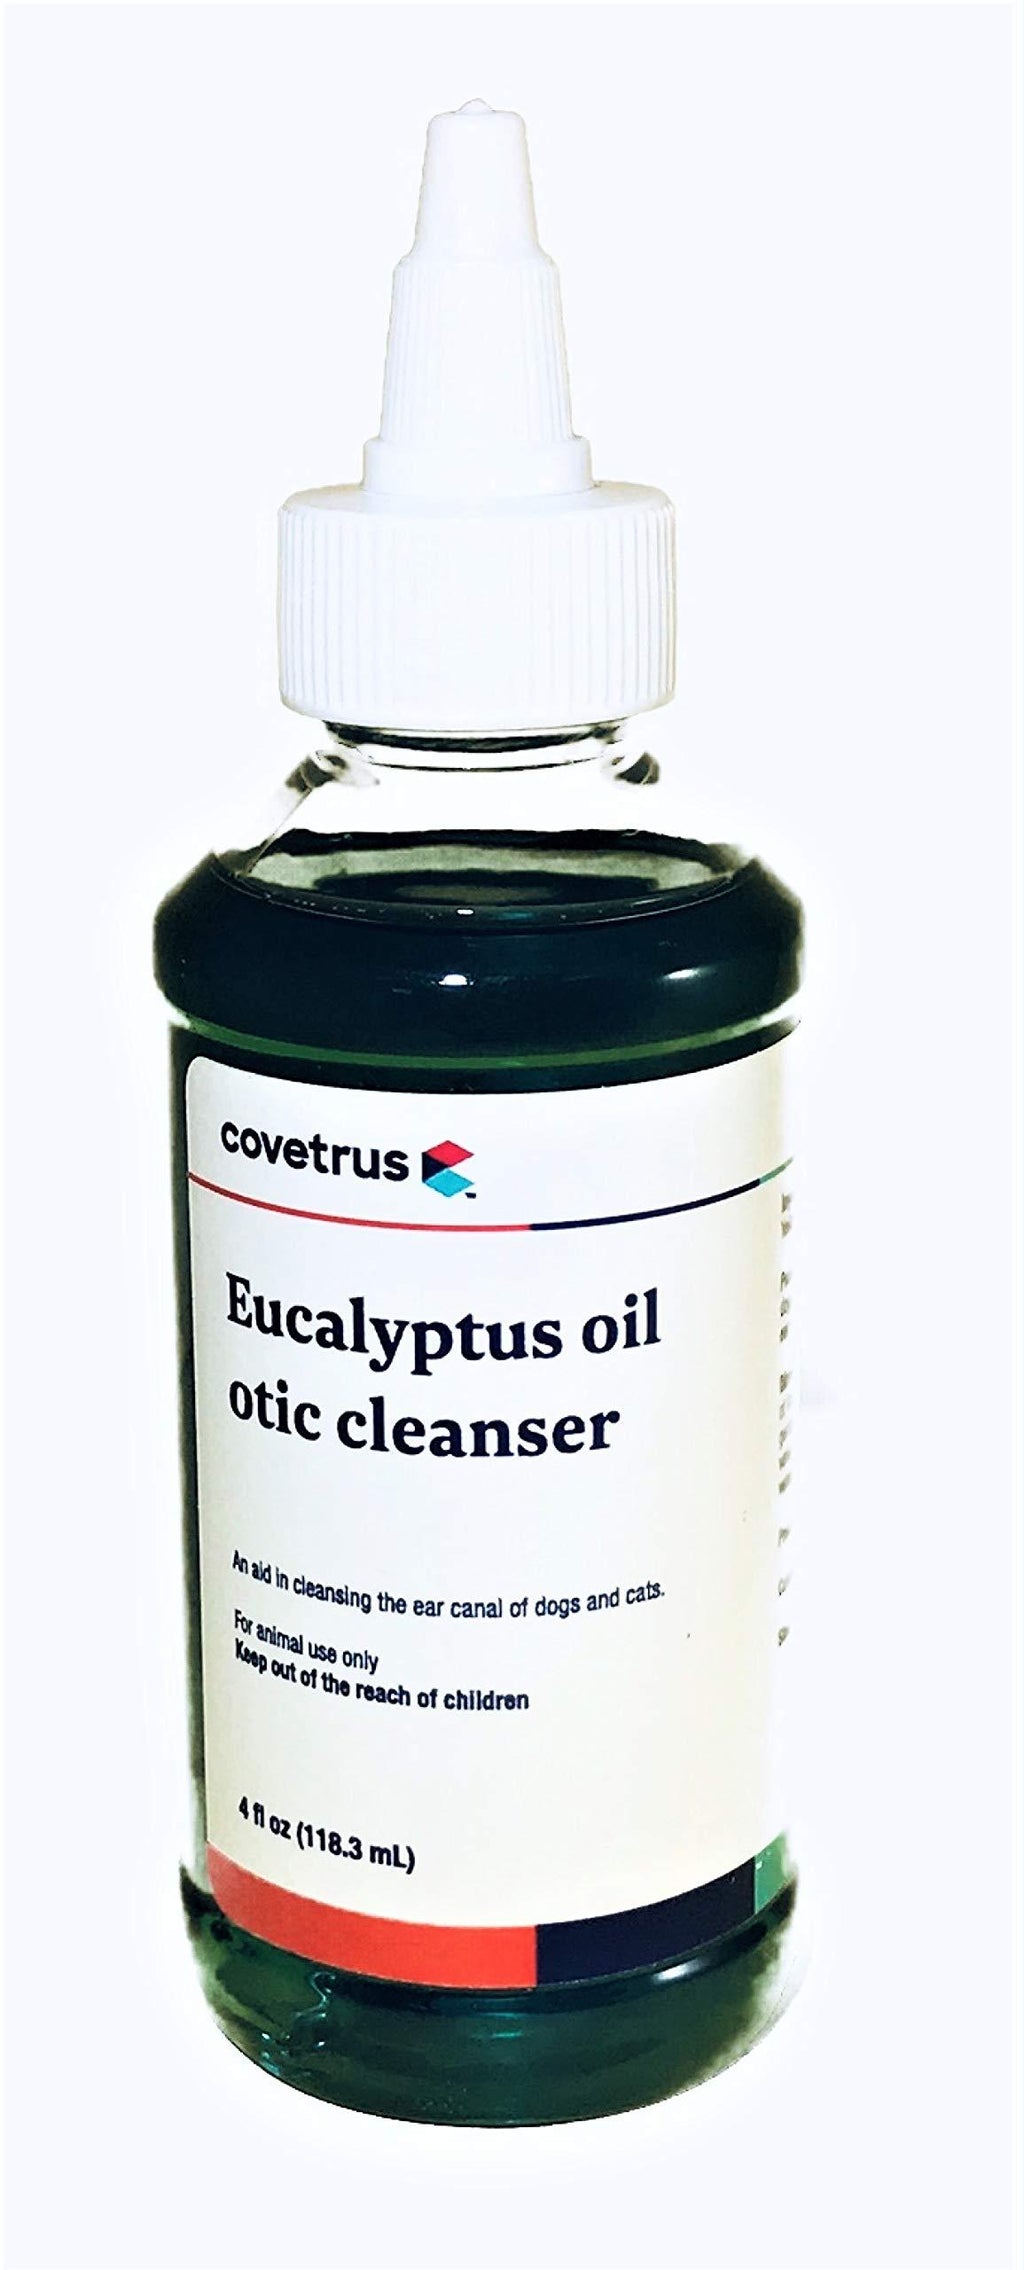 Euclens Otic Cleanser, 4 oz. - PawsPlanet Australia